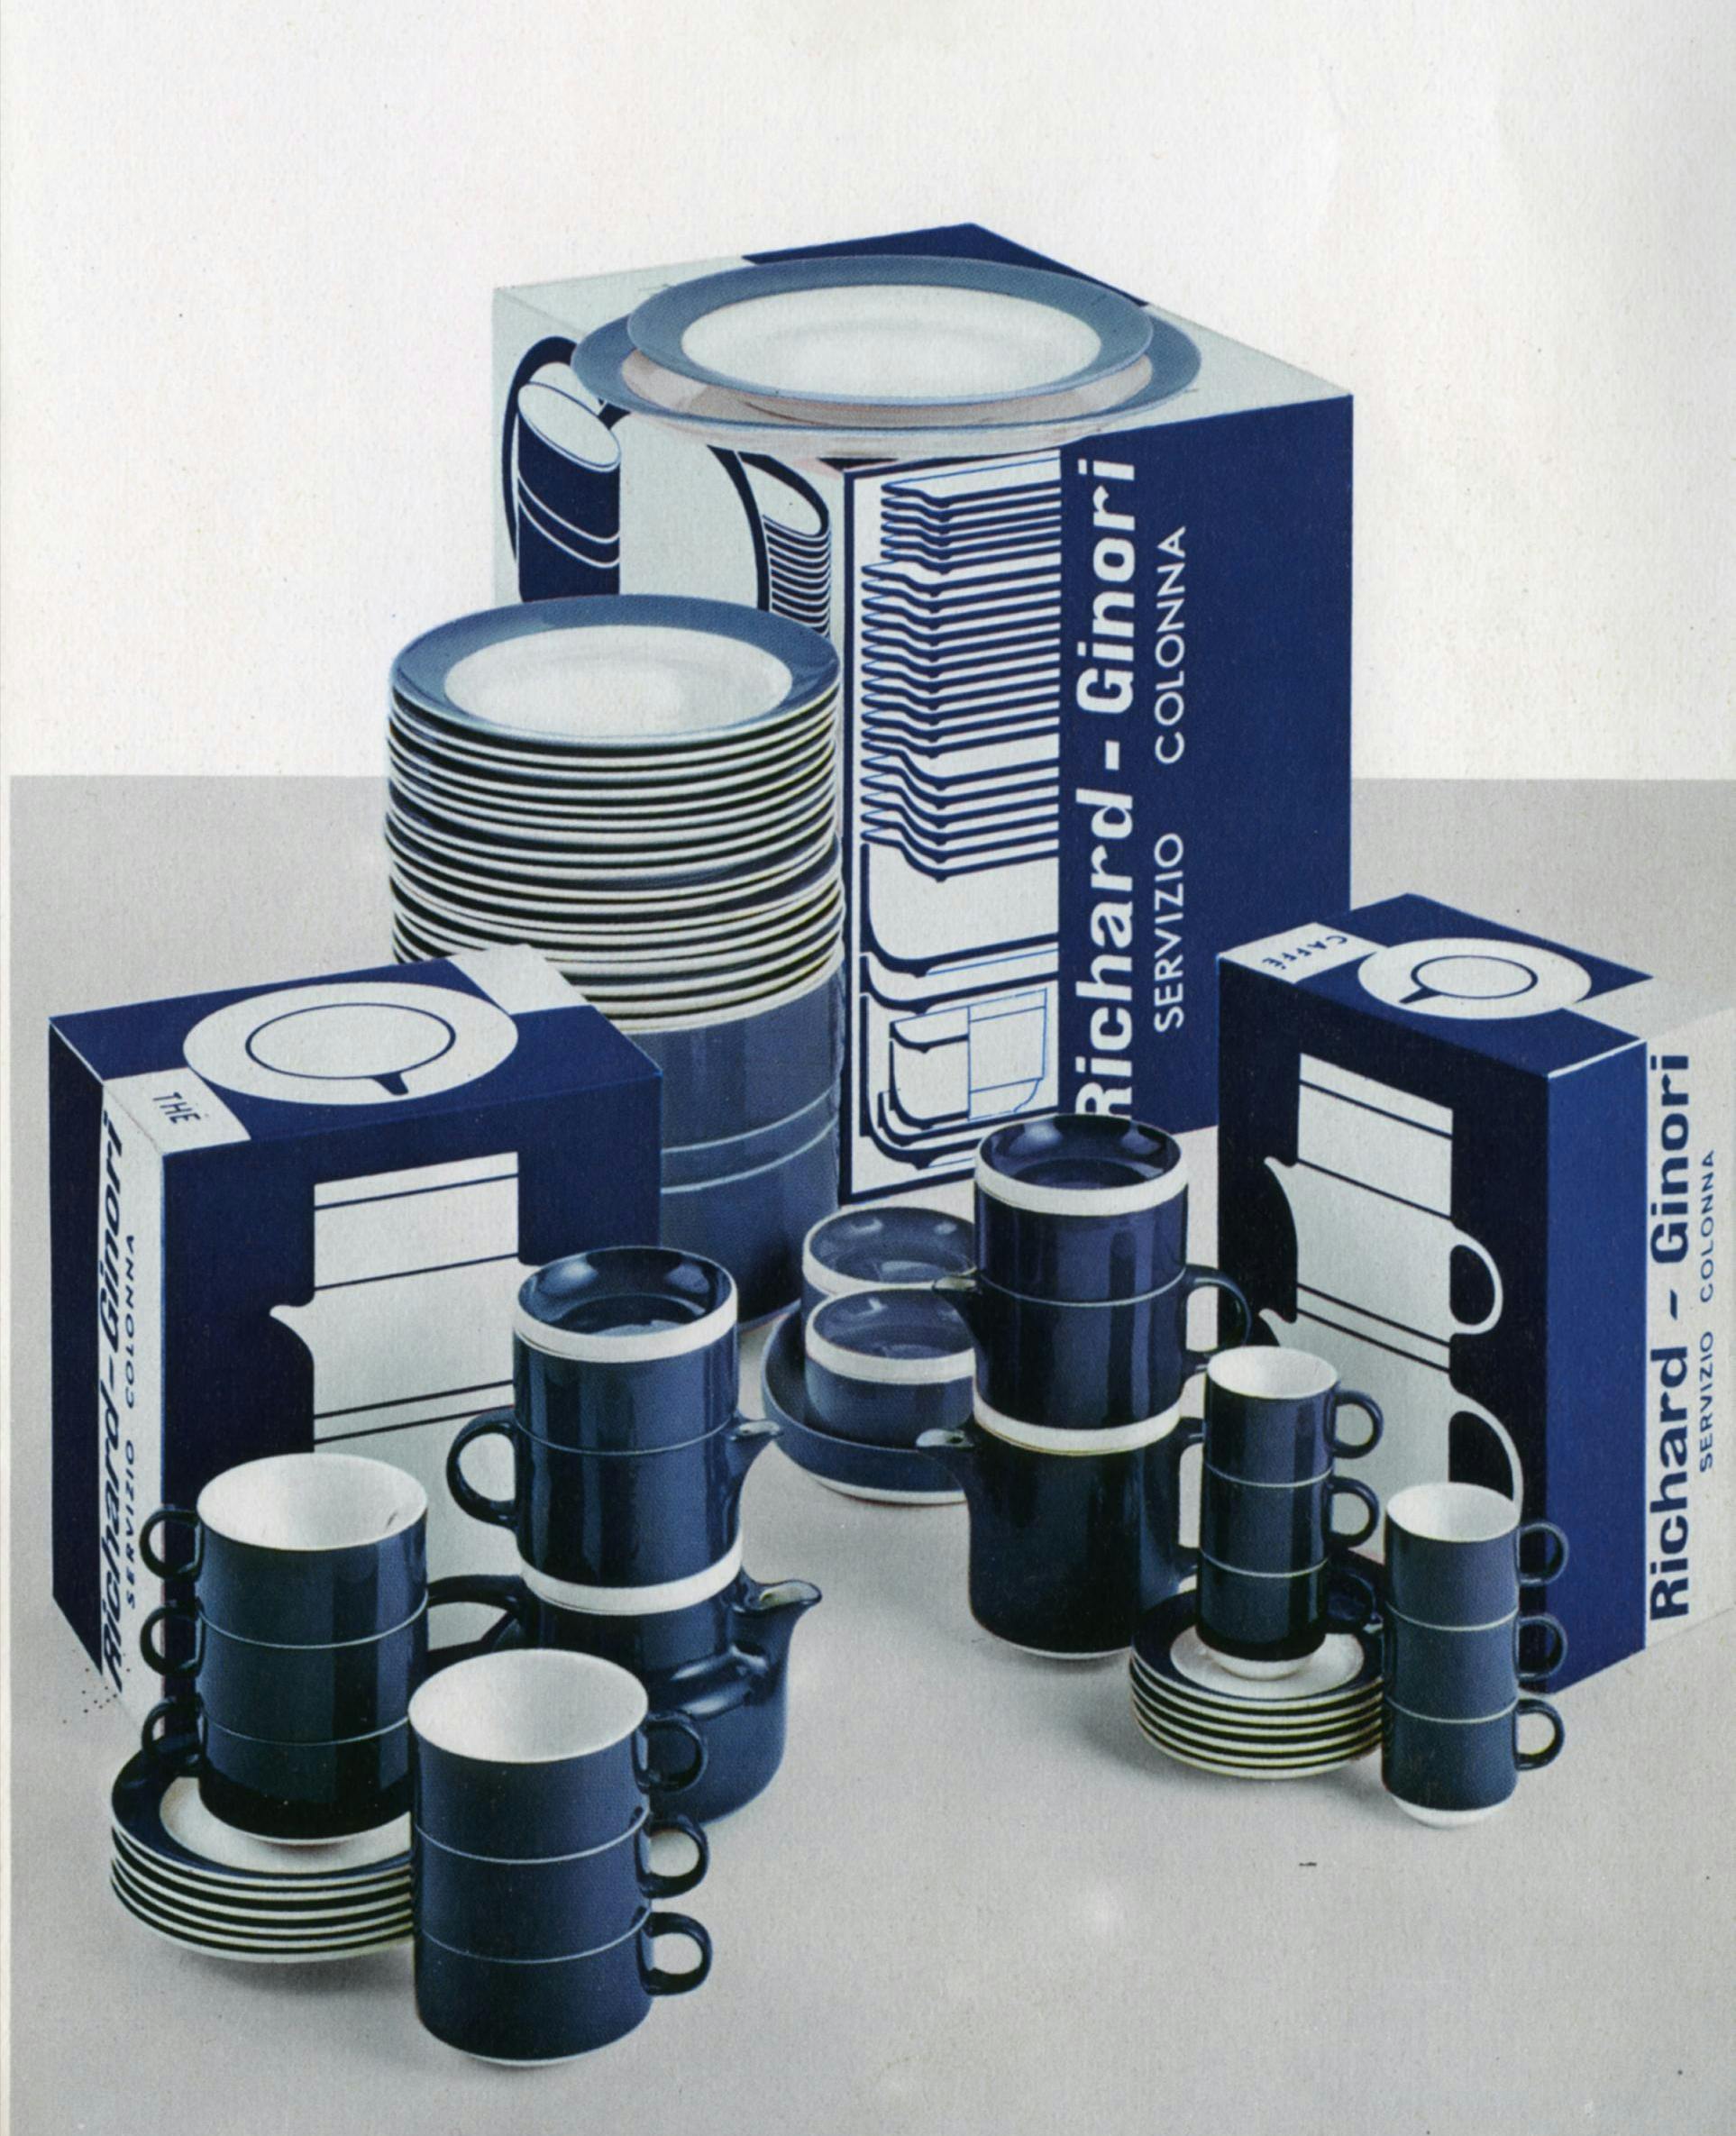 Immagine pubblicitaria del servizio impilabile Colonna in blu e bianco